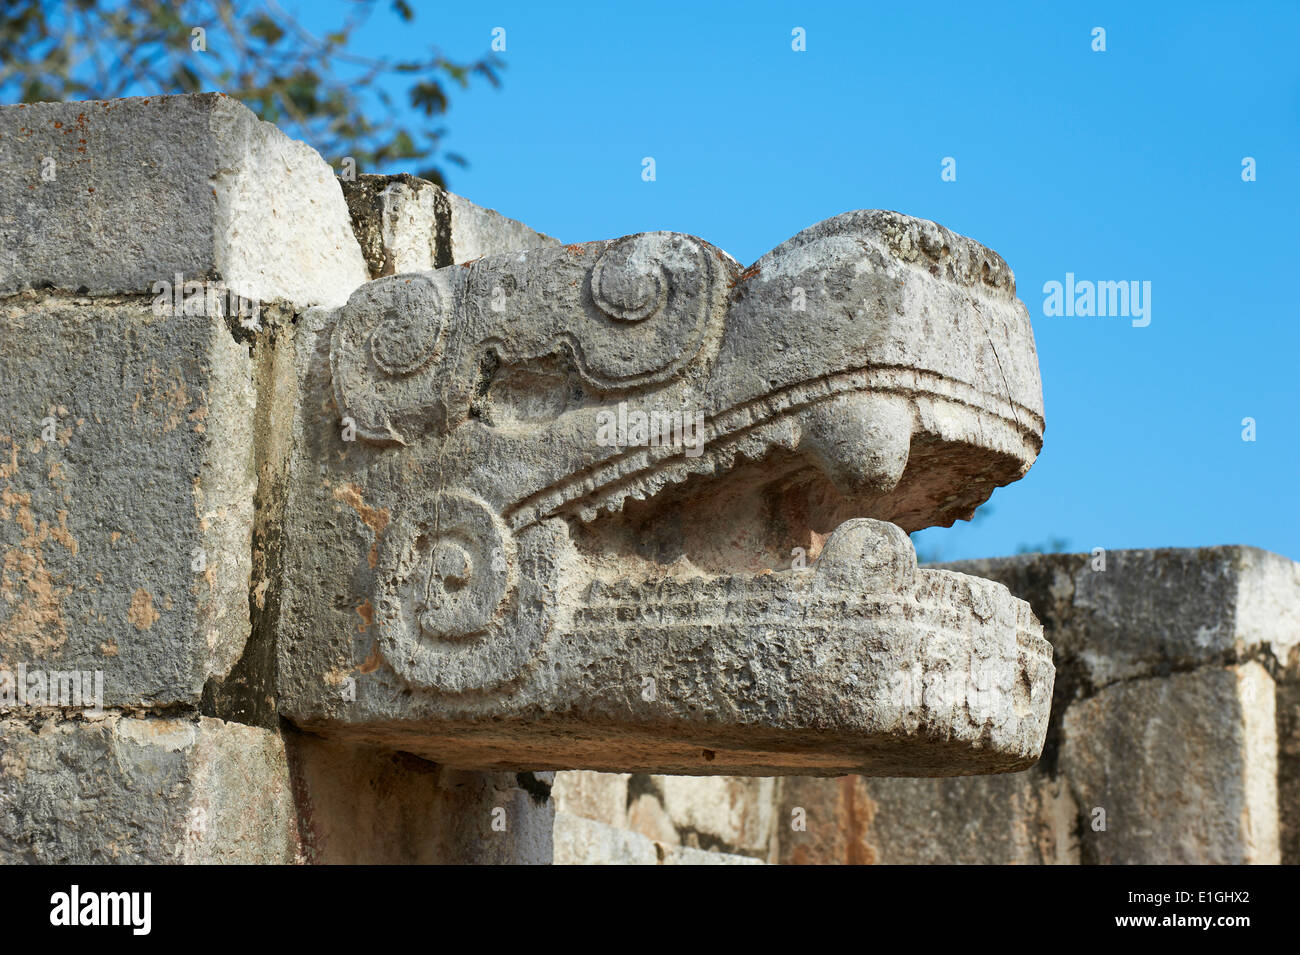 Messico, Yucatan Stato, Chichen Itza sito archeologico, patrimonio mondiale dell'UNESCO, la testa del serpente, antiche rovine maya Foto Stock